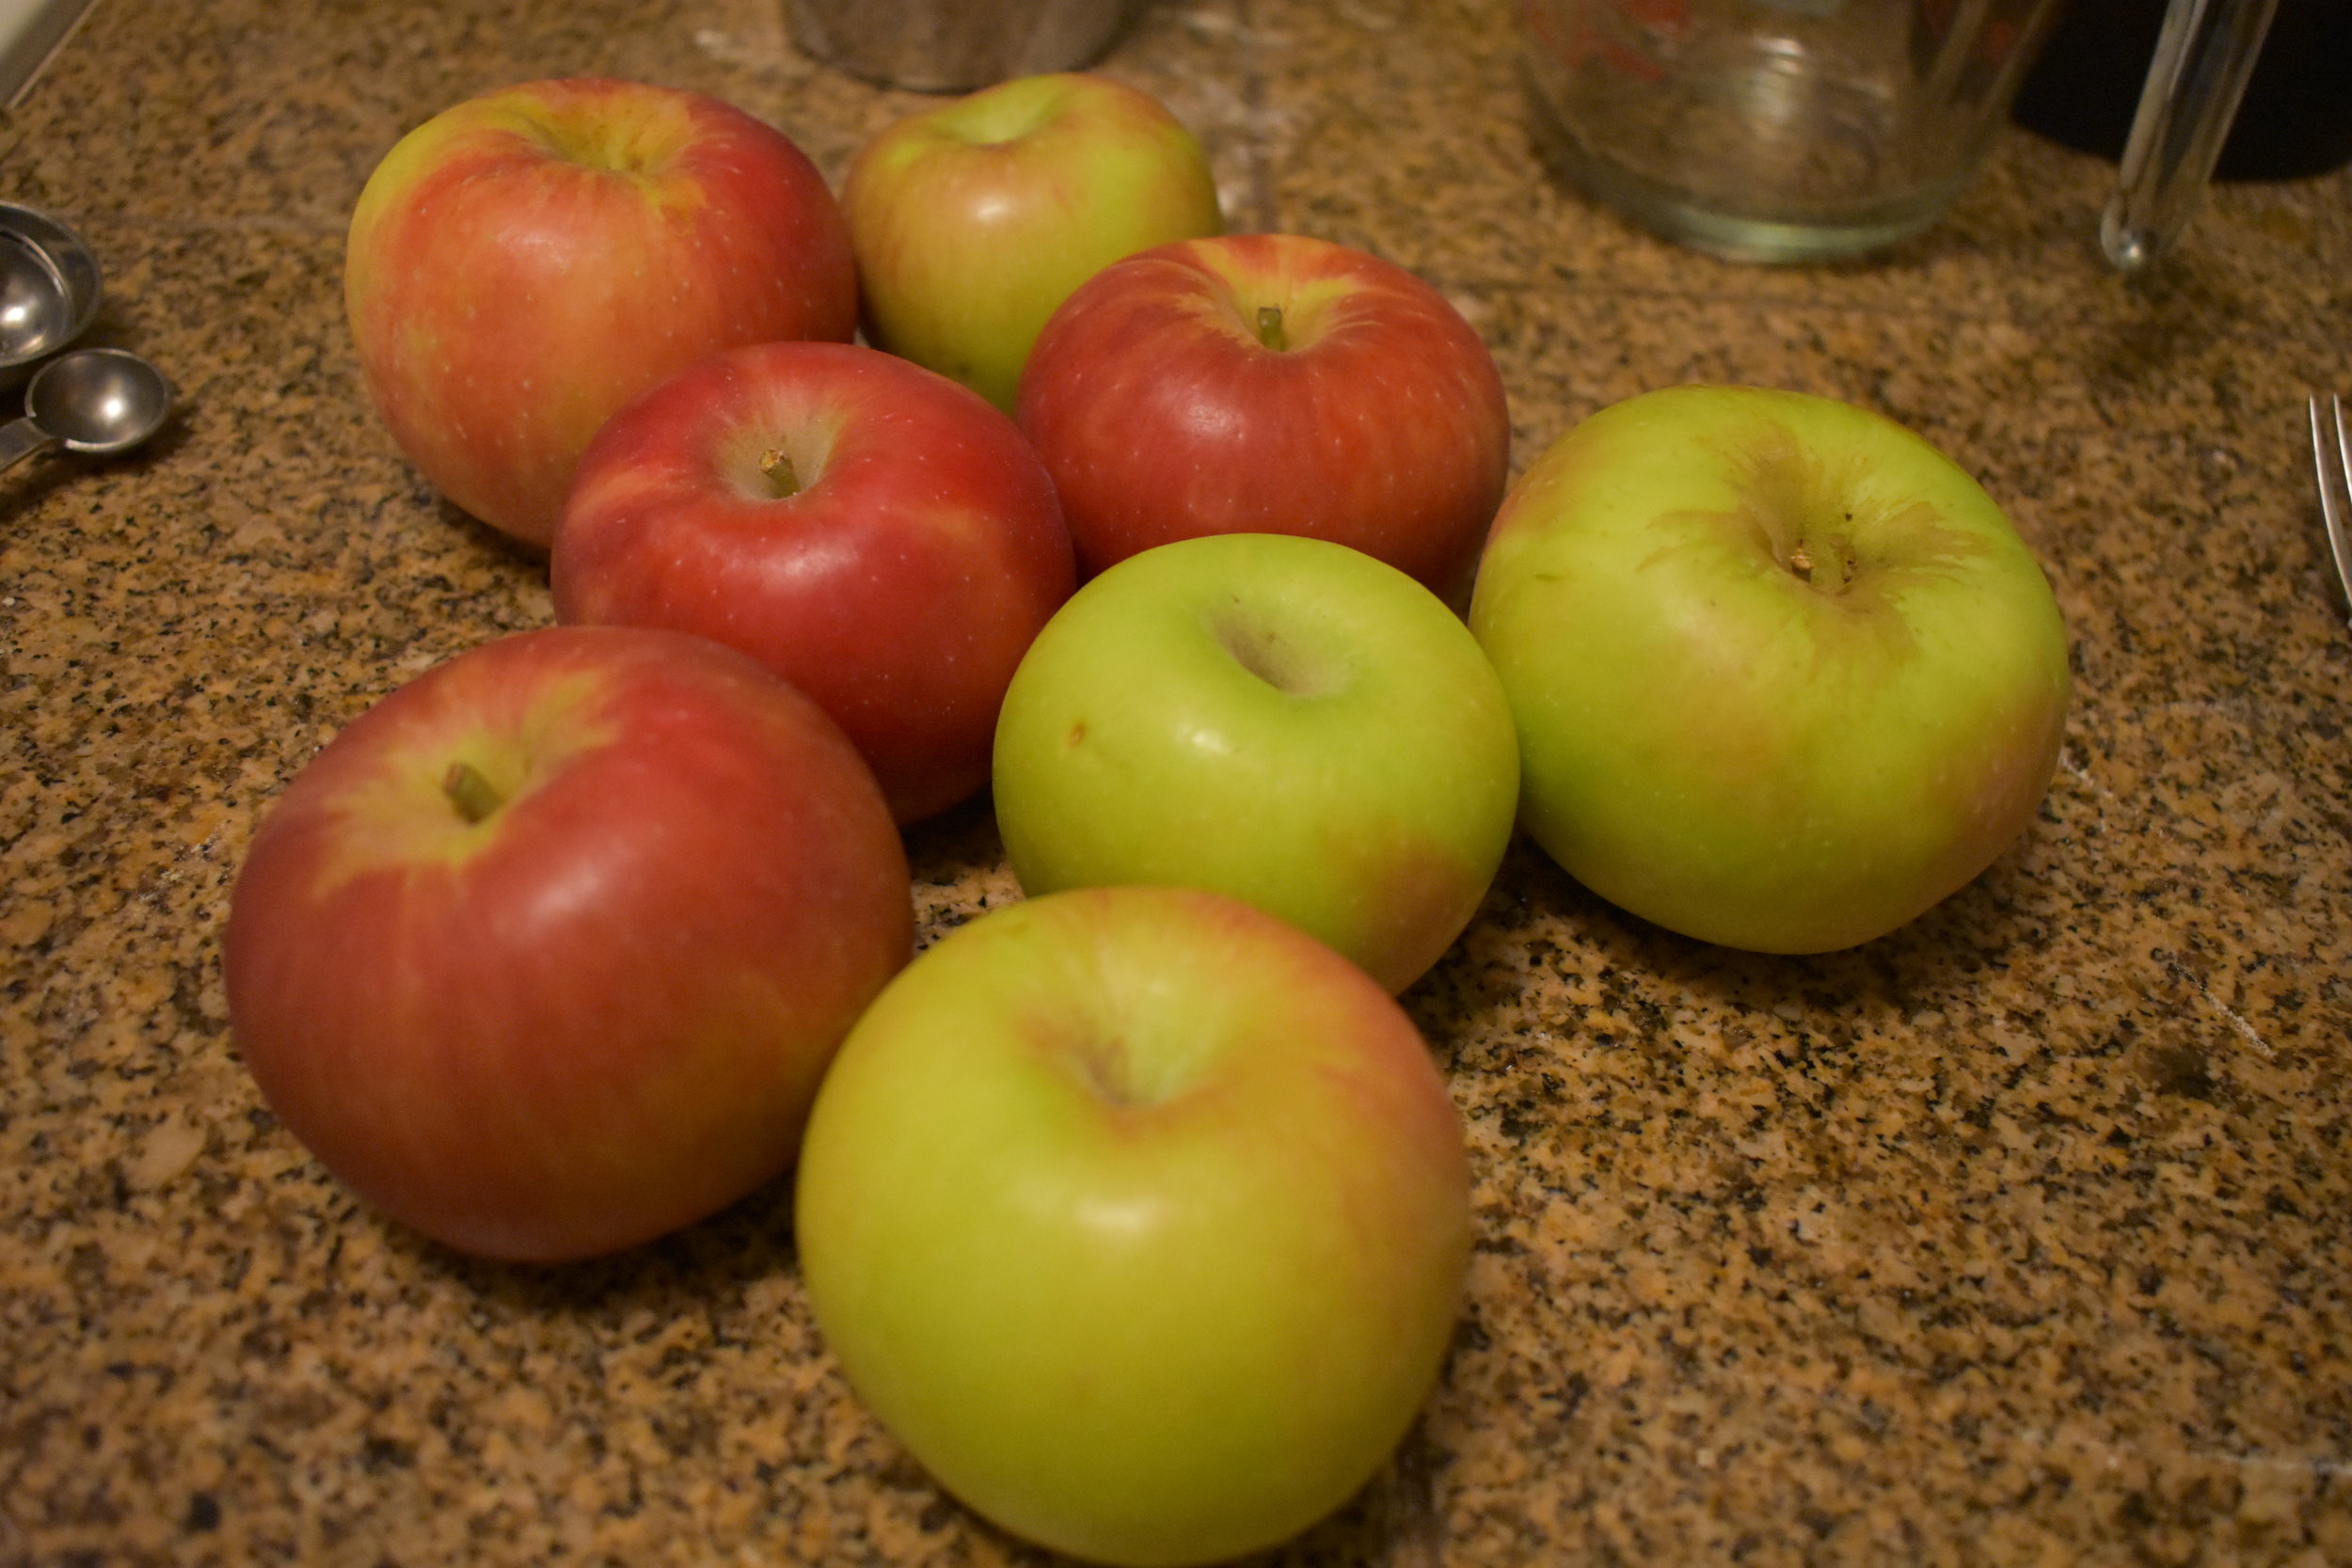 6-8 Tart Apples